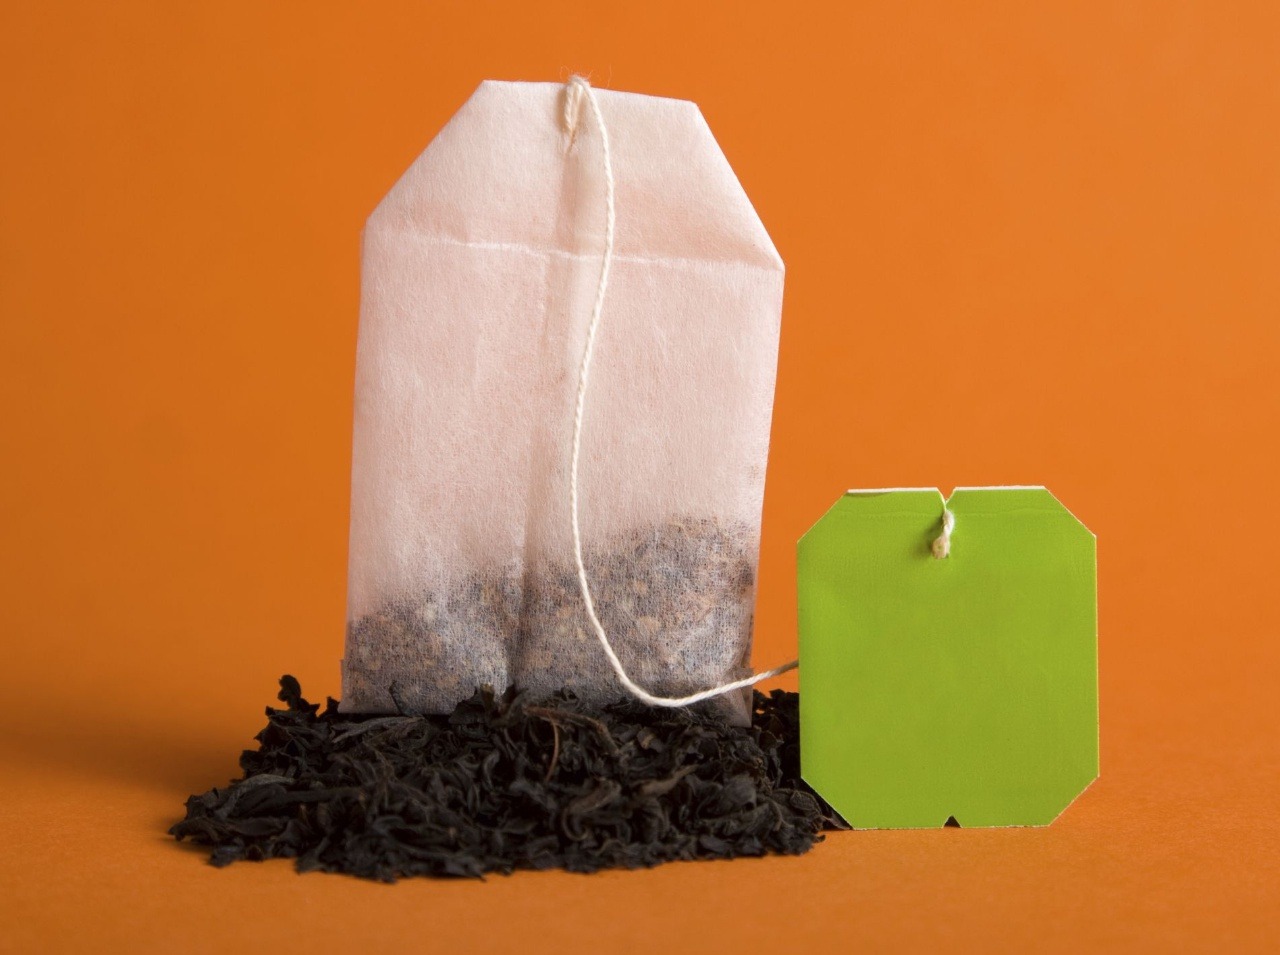 Zelené čaje vo vrecúšku obsahujú veľa pesticídov!